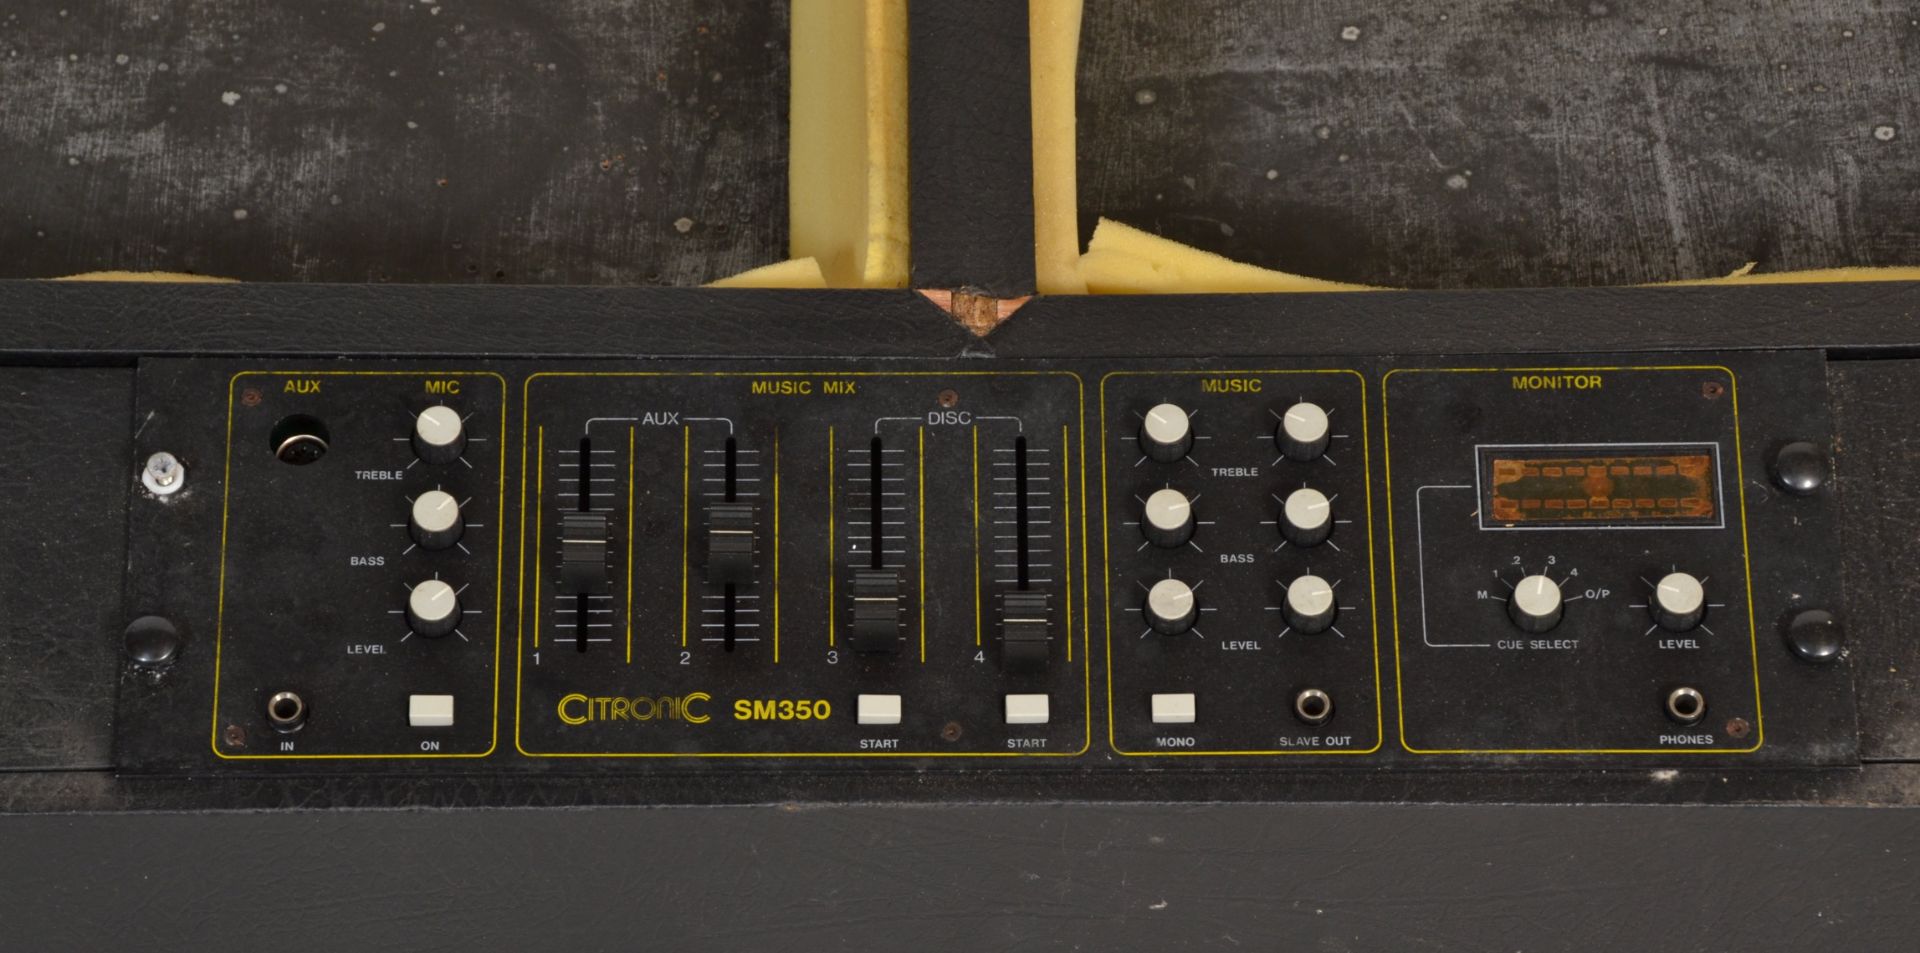 DJ Equipment - A CitroniC SM350 portable double tu - Bild 7 aus 11